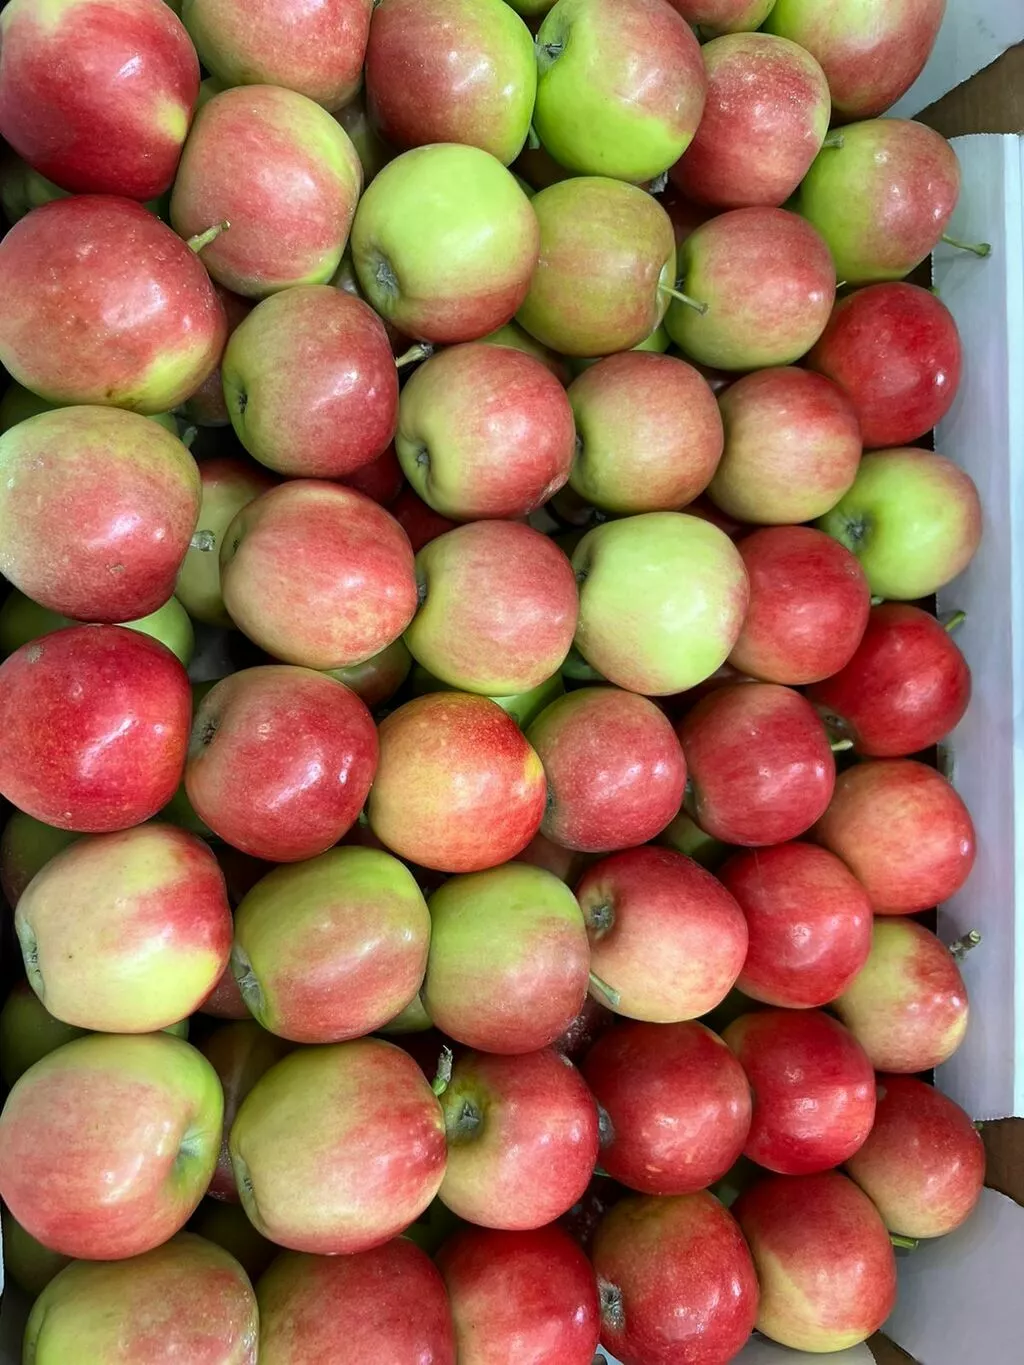 предлагаем яблоки свежие в Краснодаре и Краснодарском крае 4